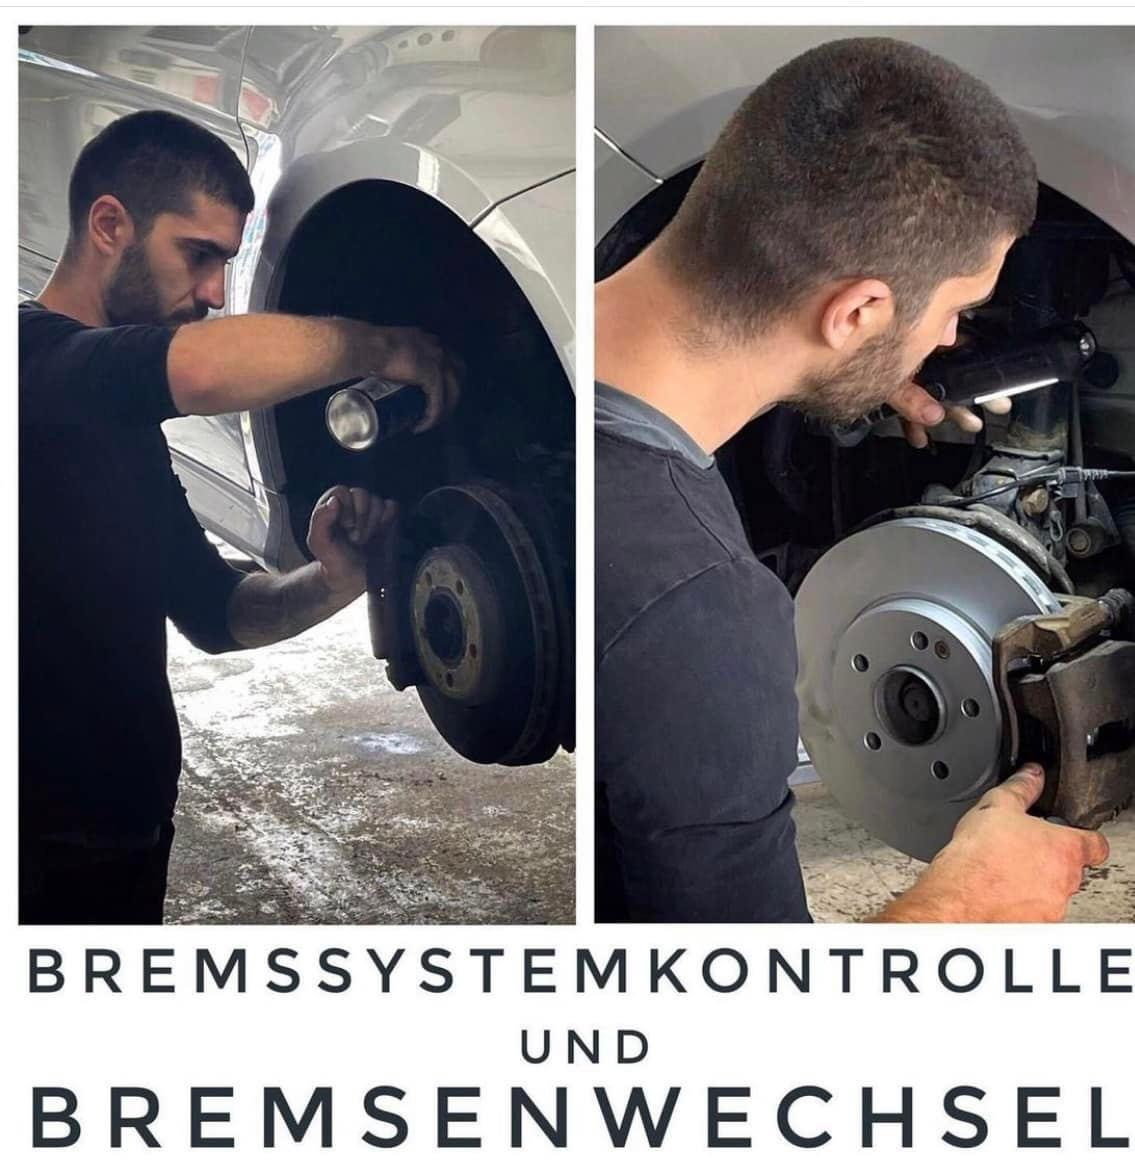 Bremssystemkontrolle und Bremsenwechsel bei der Truck & Car Service GmbH